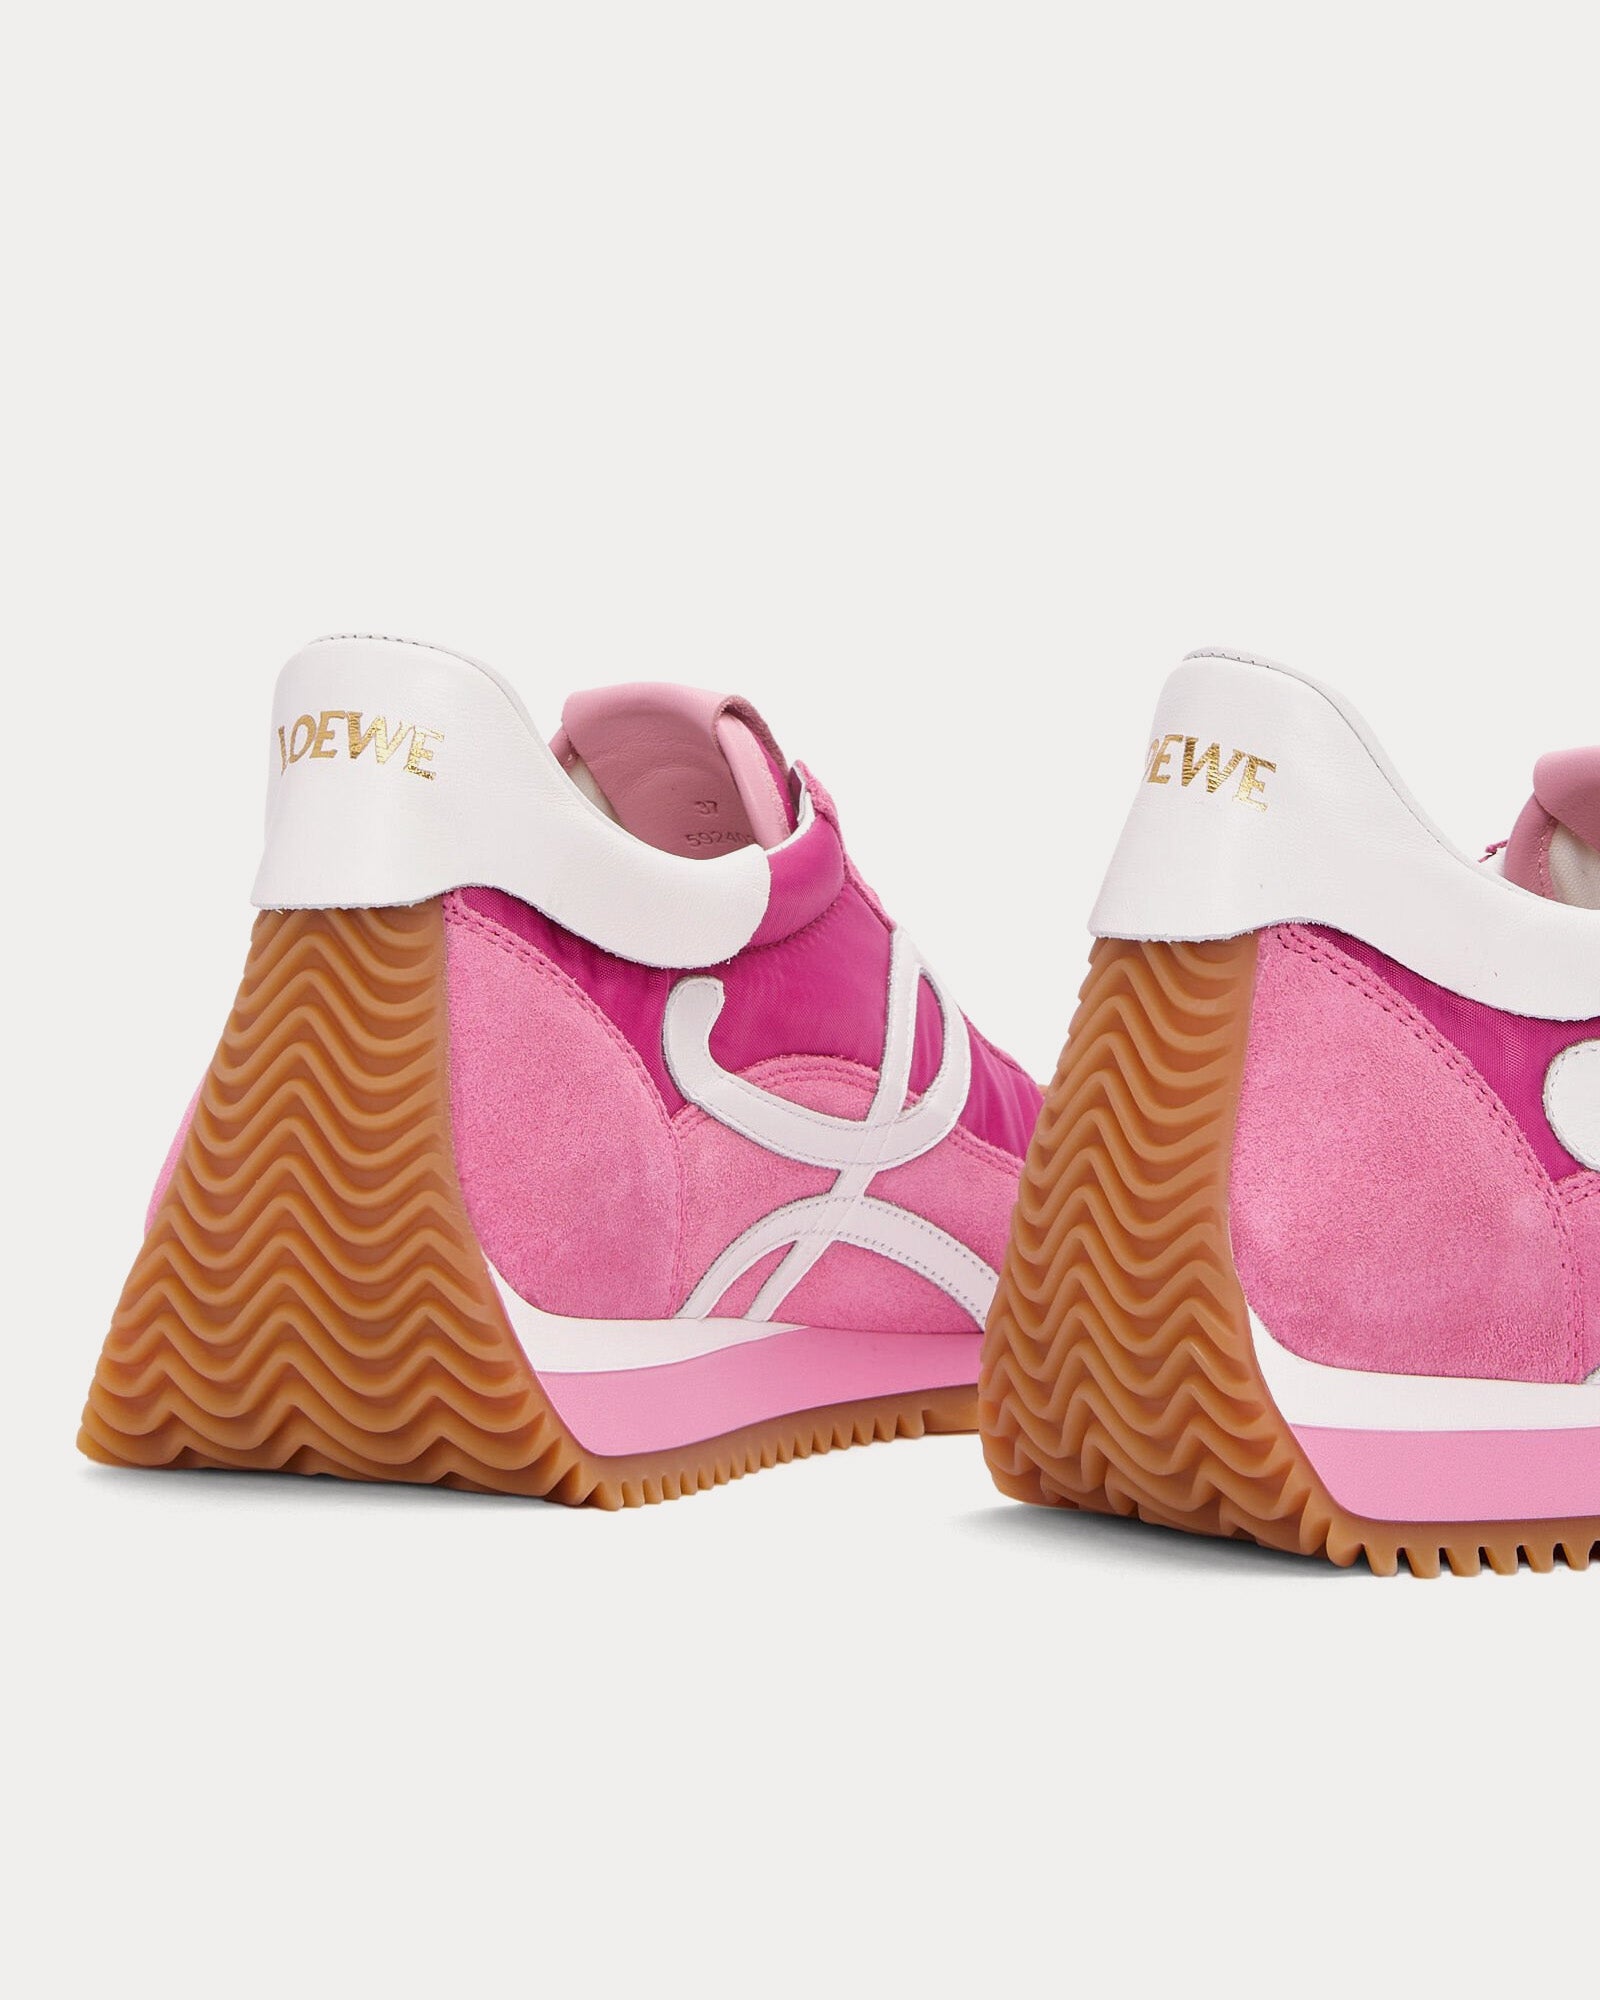 Loewe x Paula's Ibiza - Flow Runner Nylon & Suede Pink Low Top Sneakers